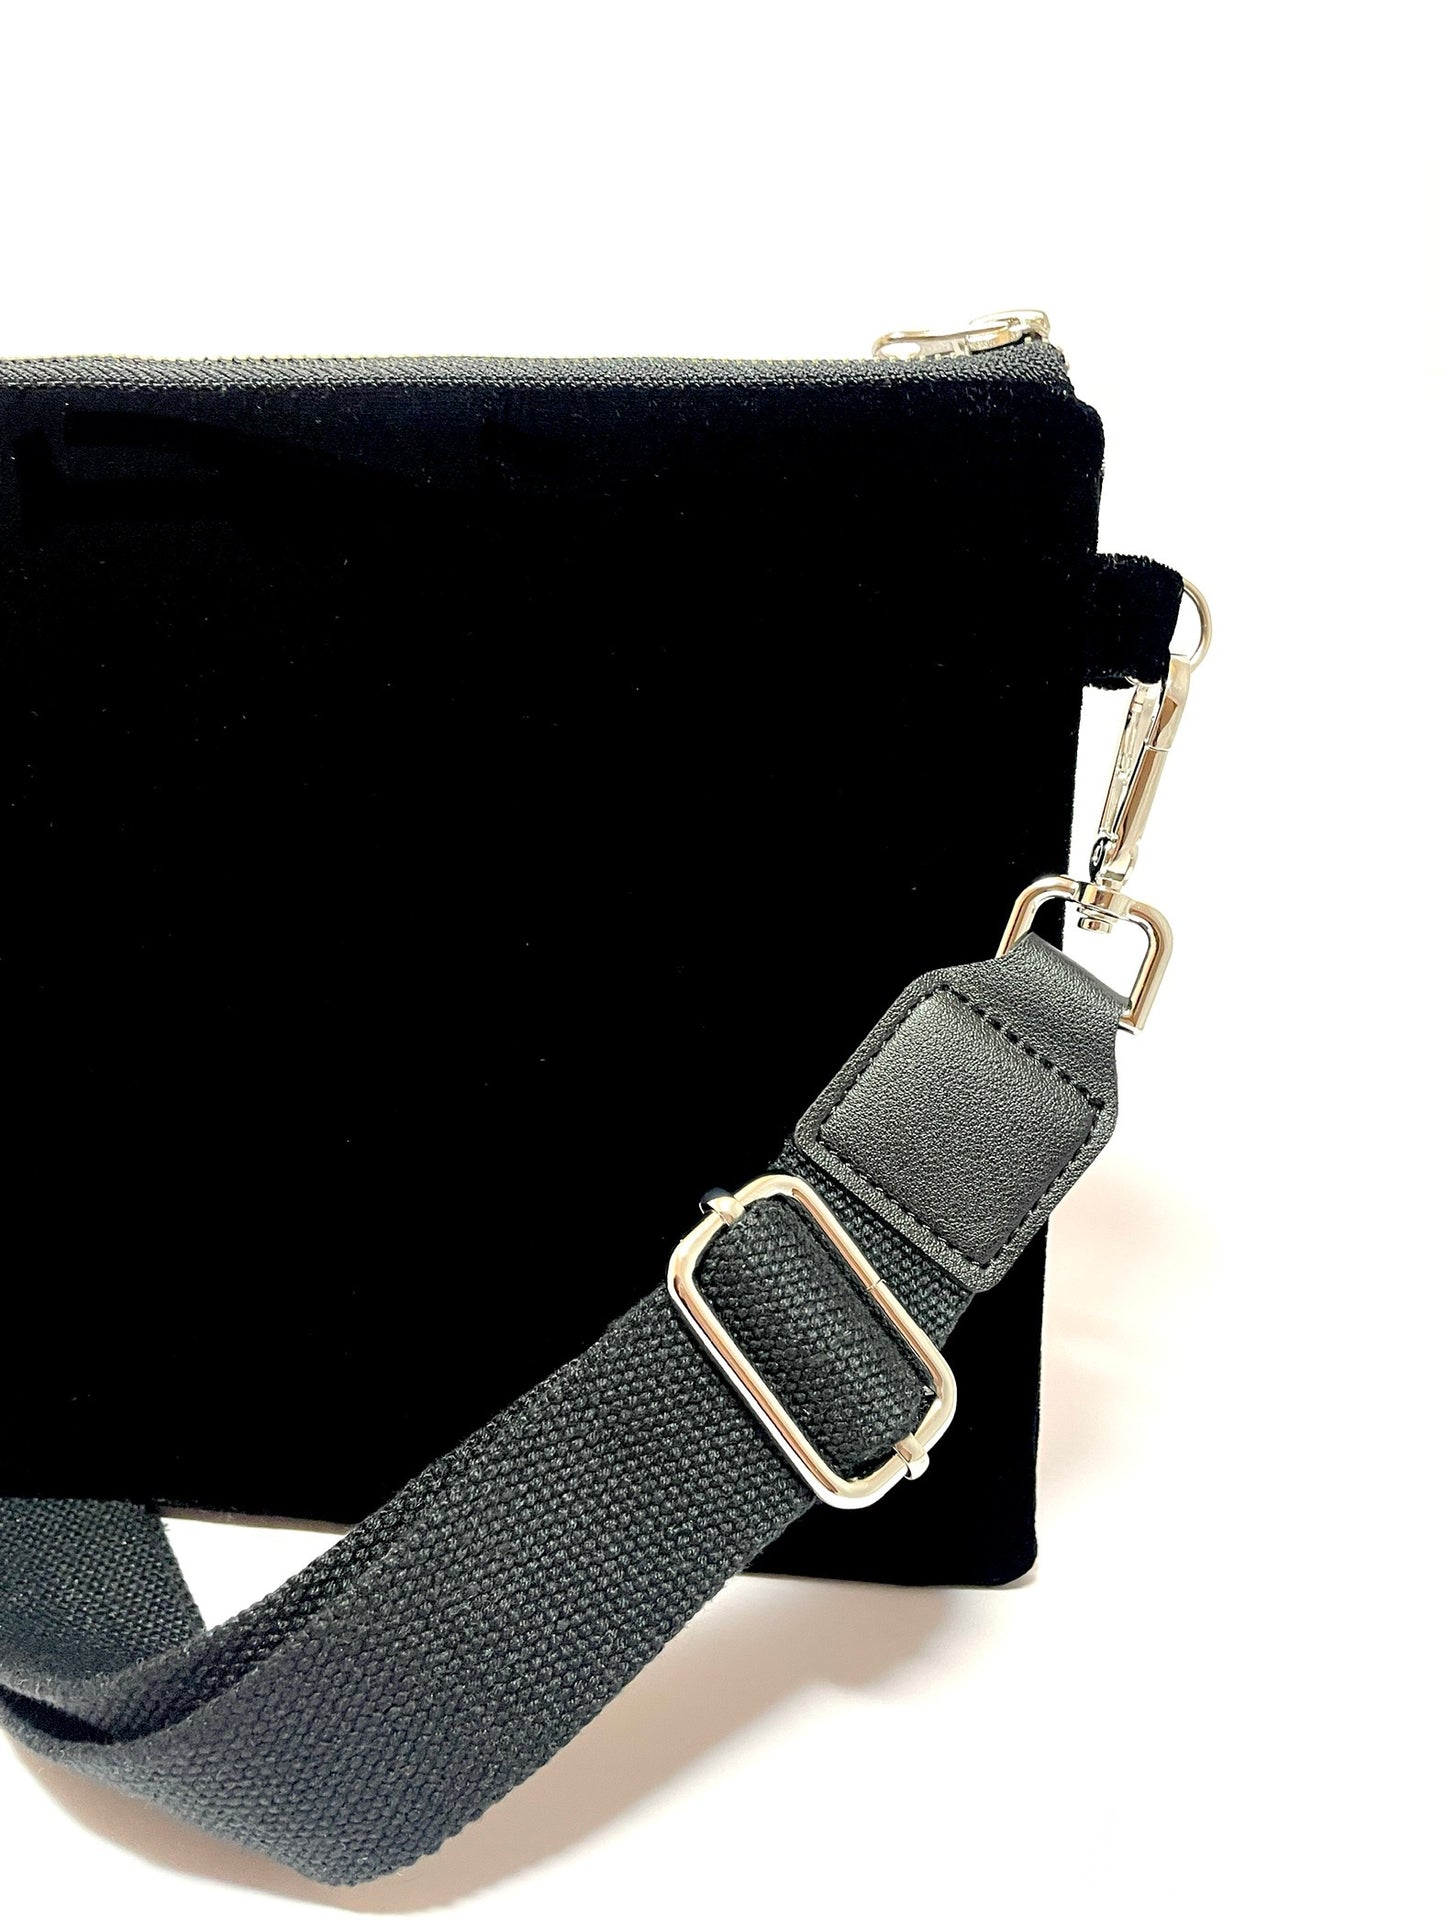 Black velvet crossbody bag